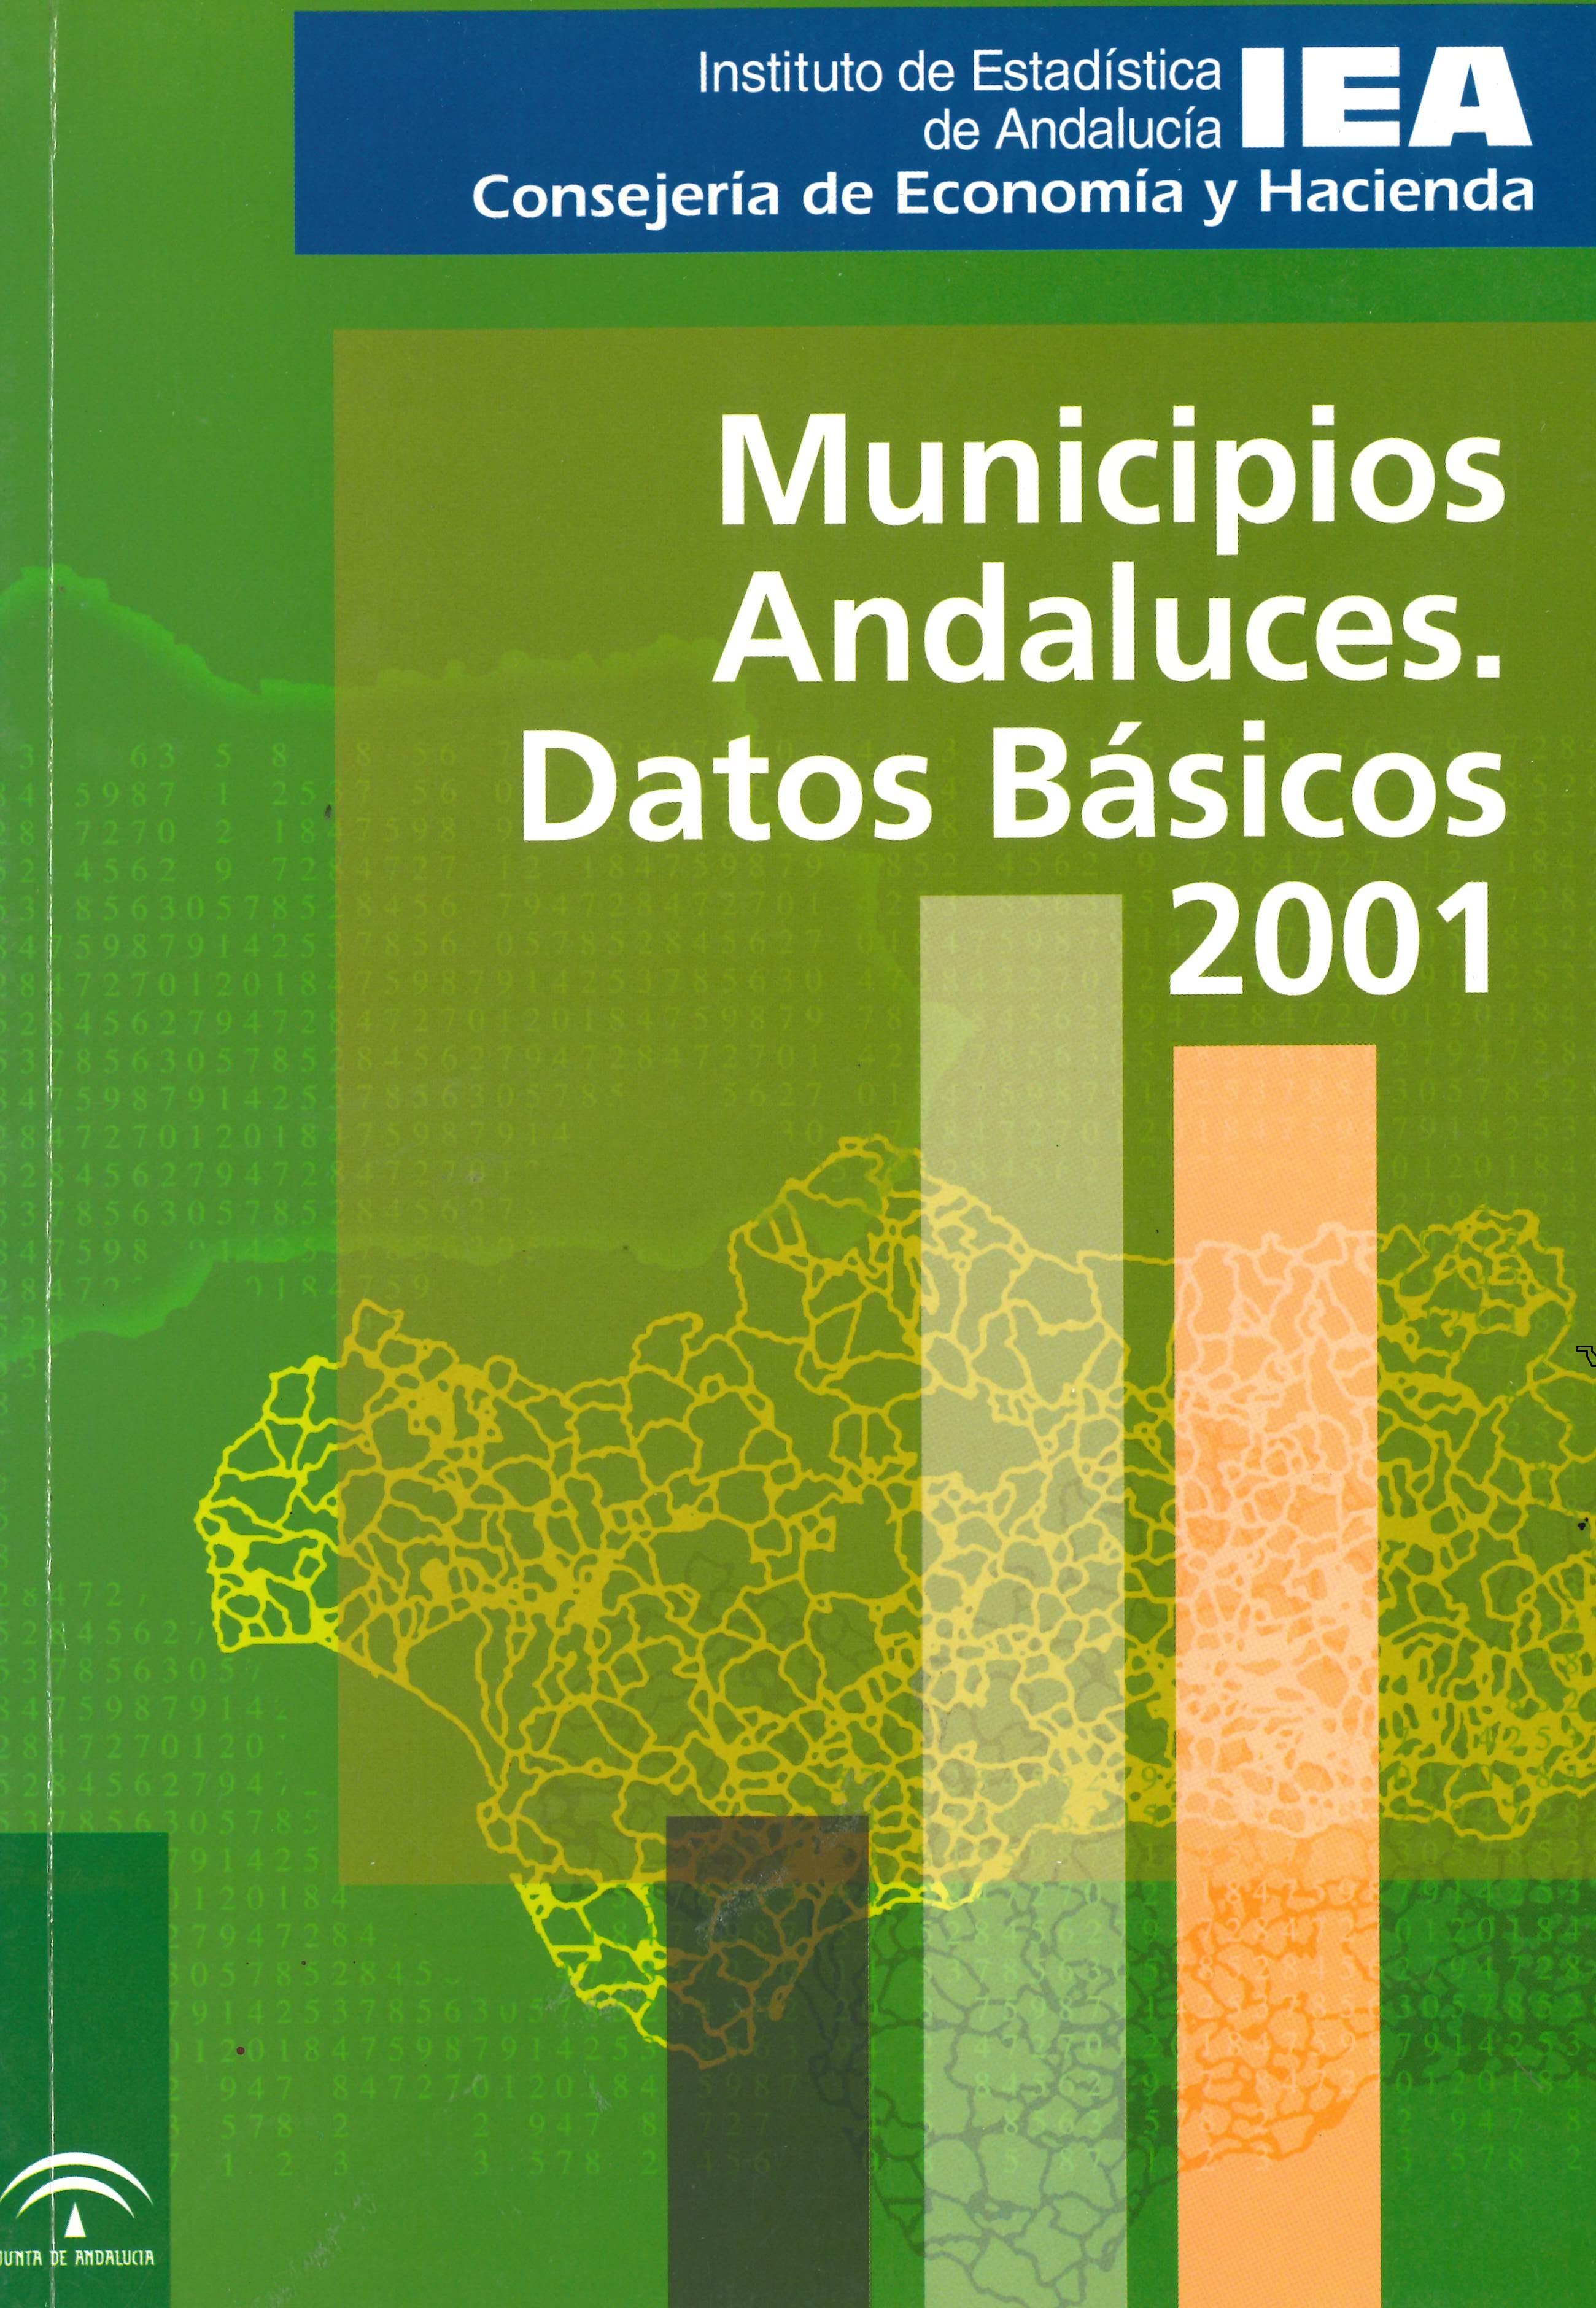 Imagen representativa de la publicación Muncipios andaluces: datos básicos 2001